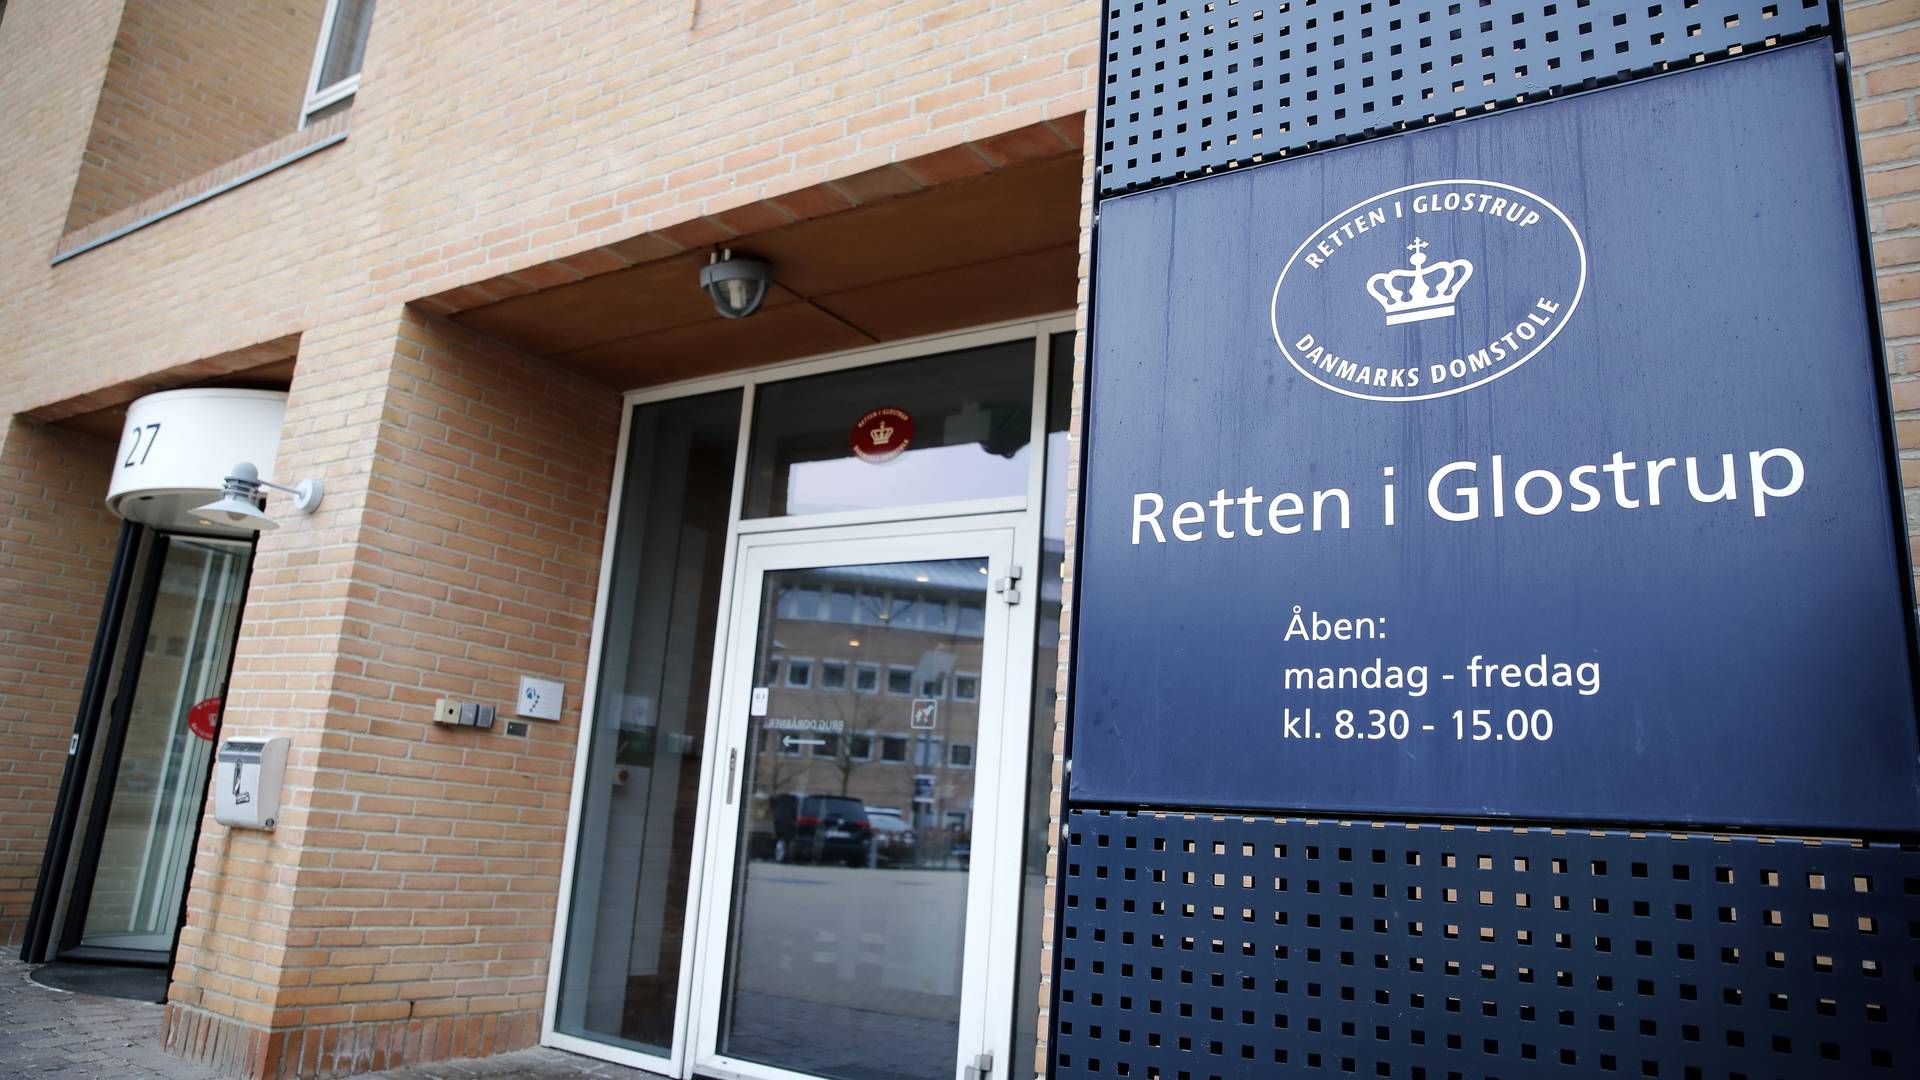 Retten i Glostrup anslår, at man har aflyst cirka 300 straffesager. Antallet af straffesager, som er afviklet som planlagt, kan omvendt tælles på én hånd, lyder det. | Foto: Jens Dresling